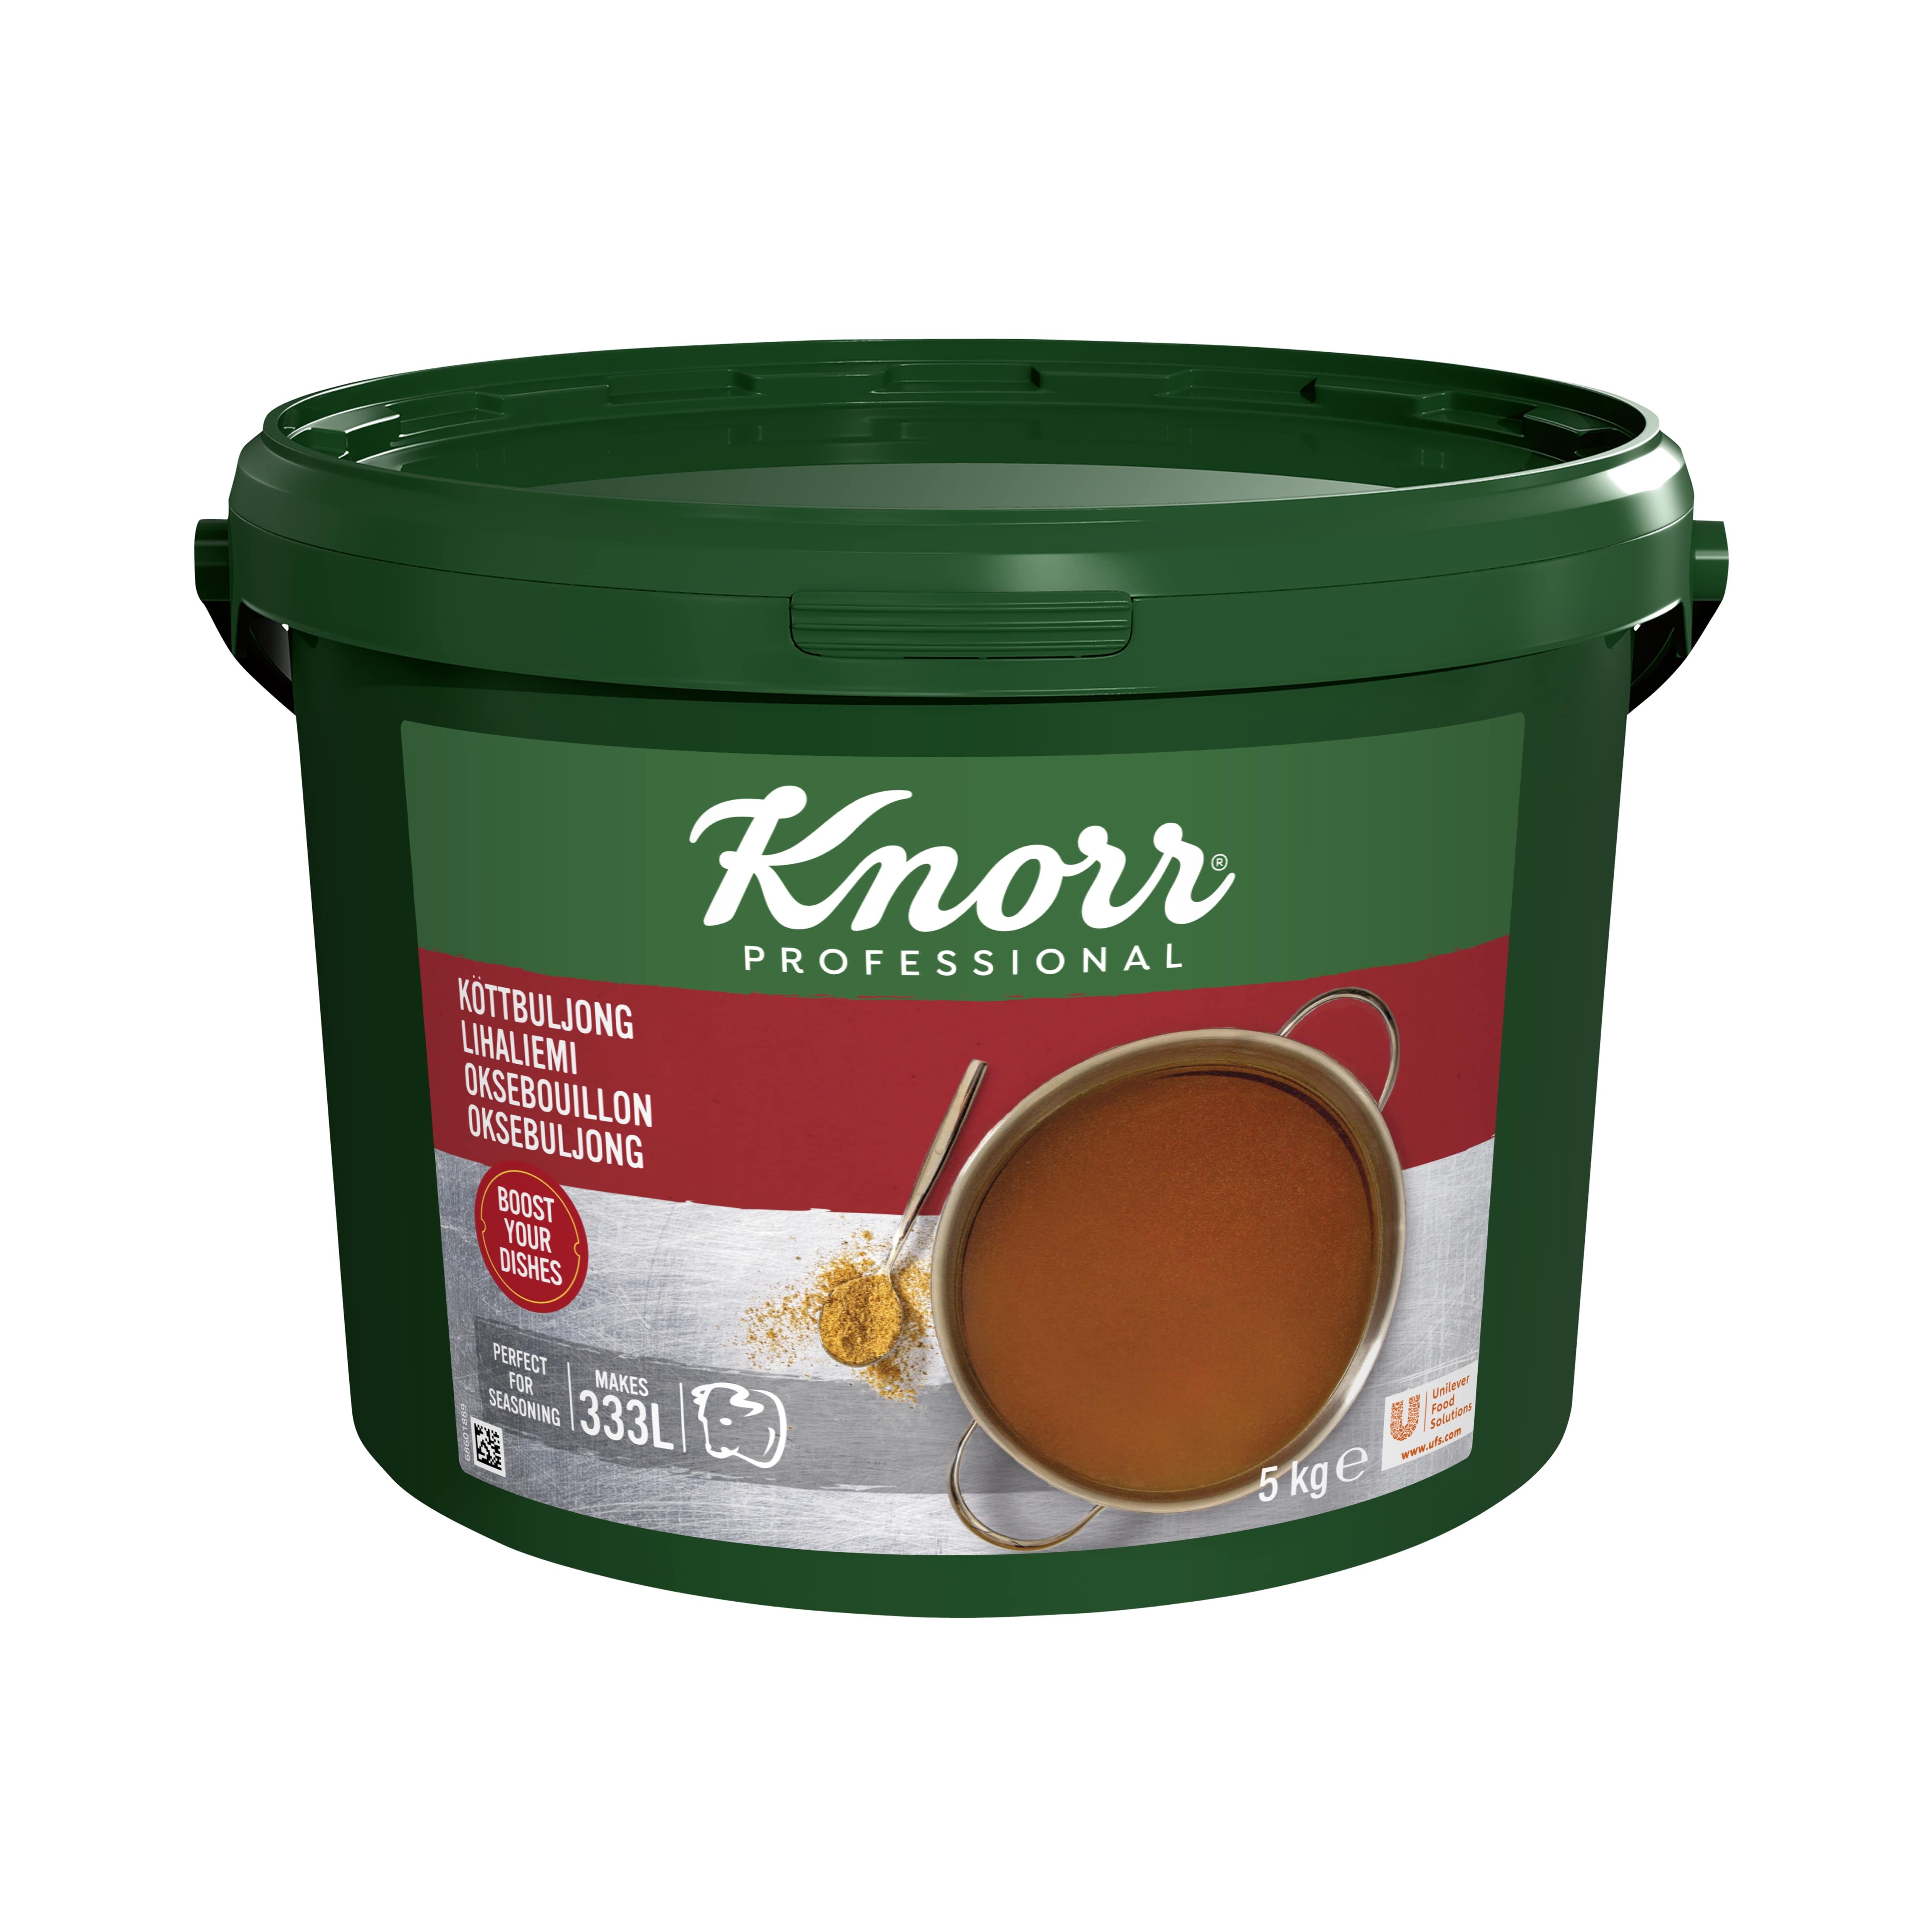 Knorr Lihaliemi 5 kg / 333 L - 